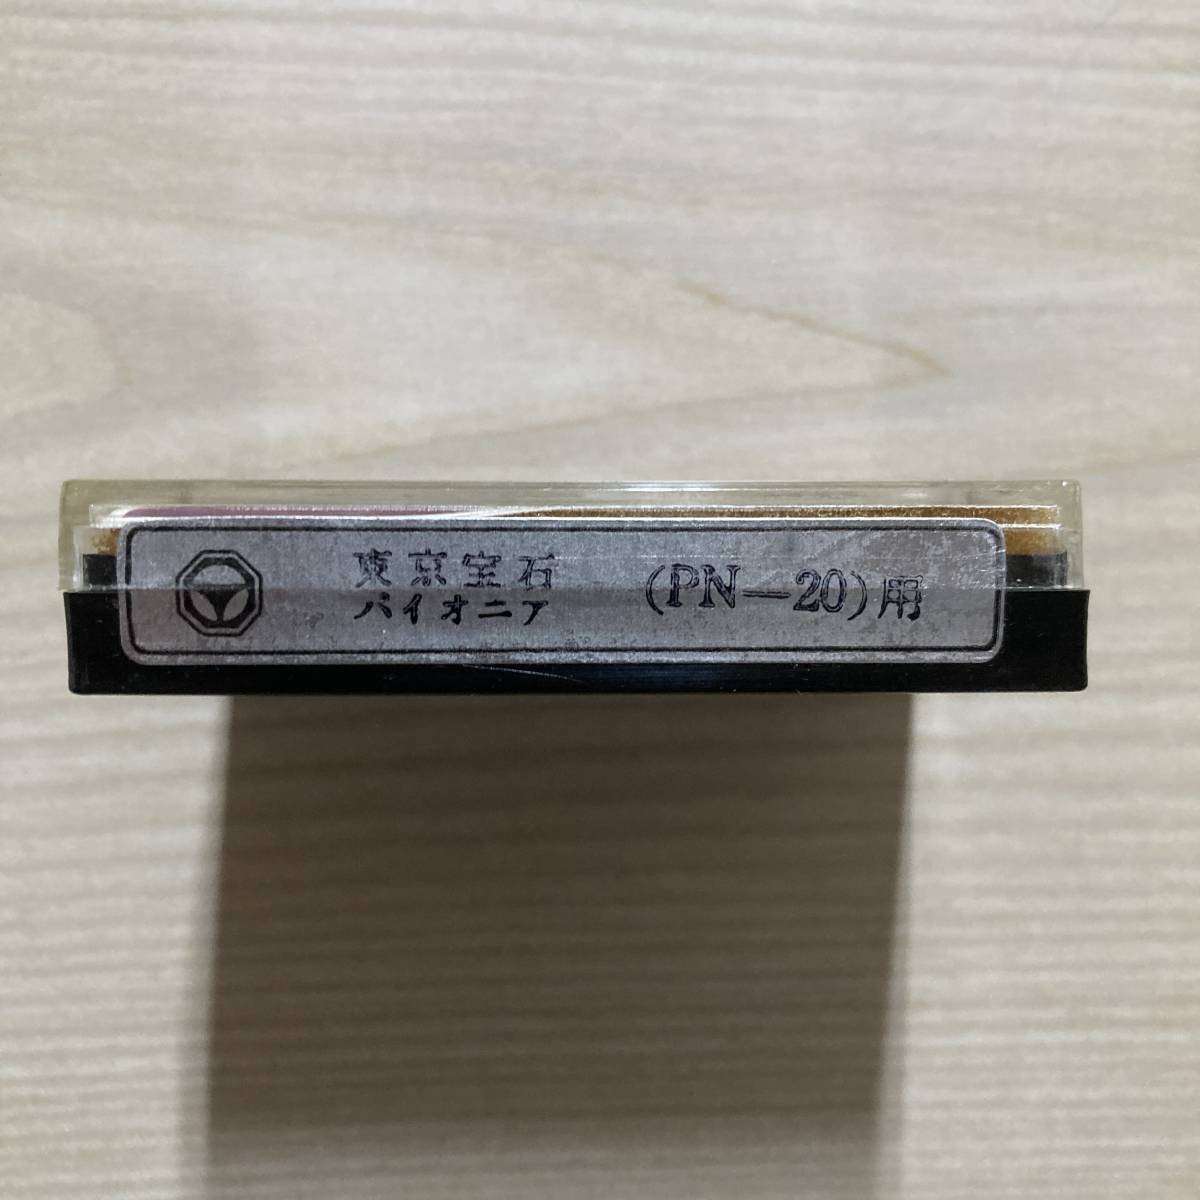  stylus Tokyo gem Pioneer (PN-20) for [033]